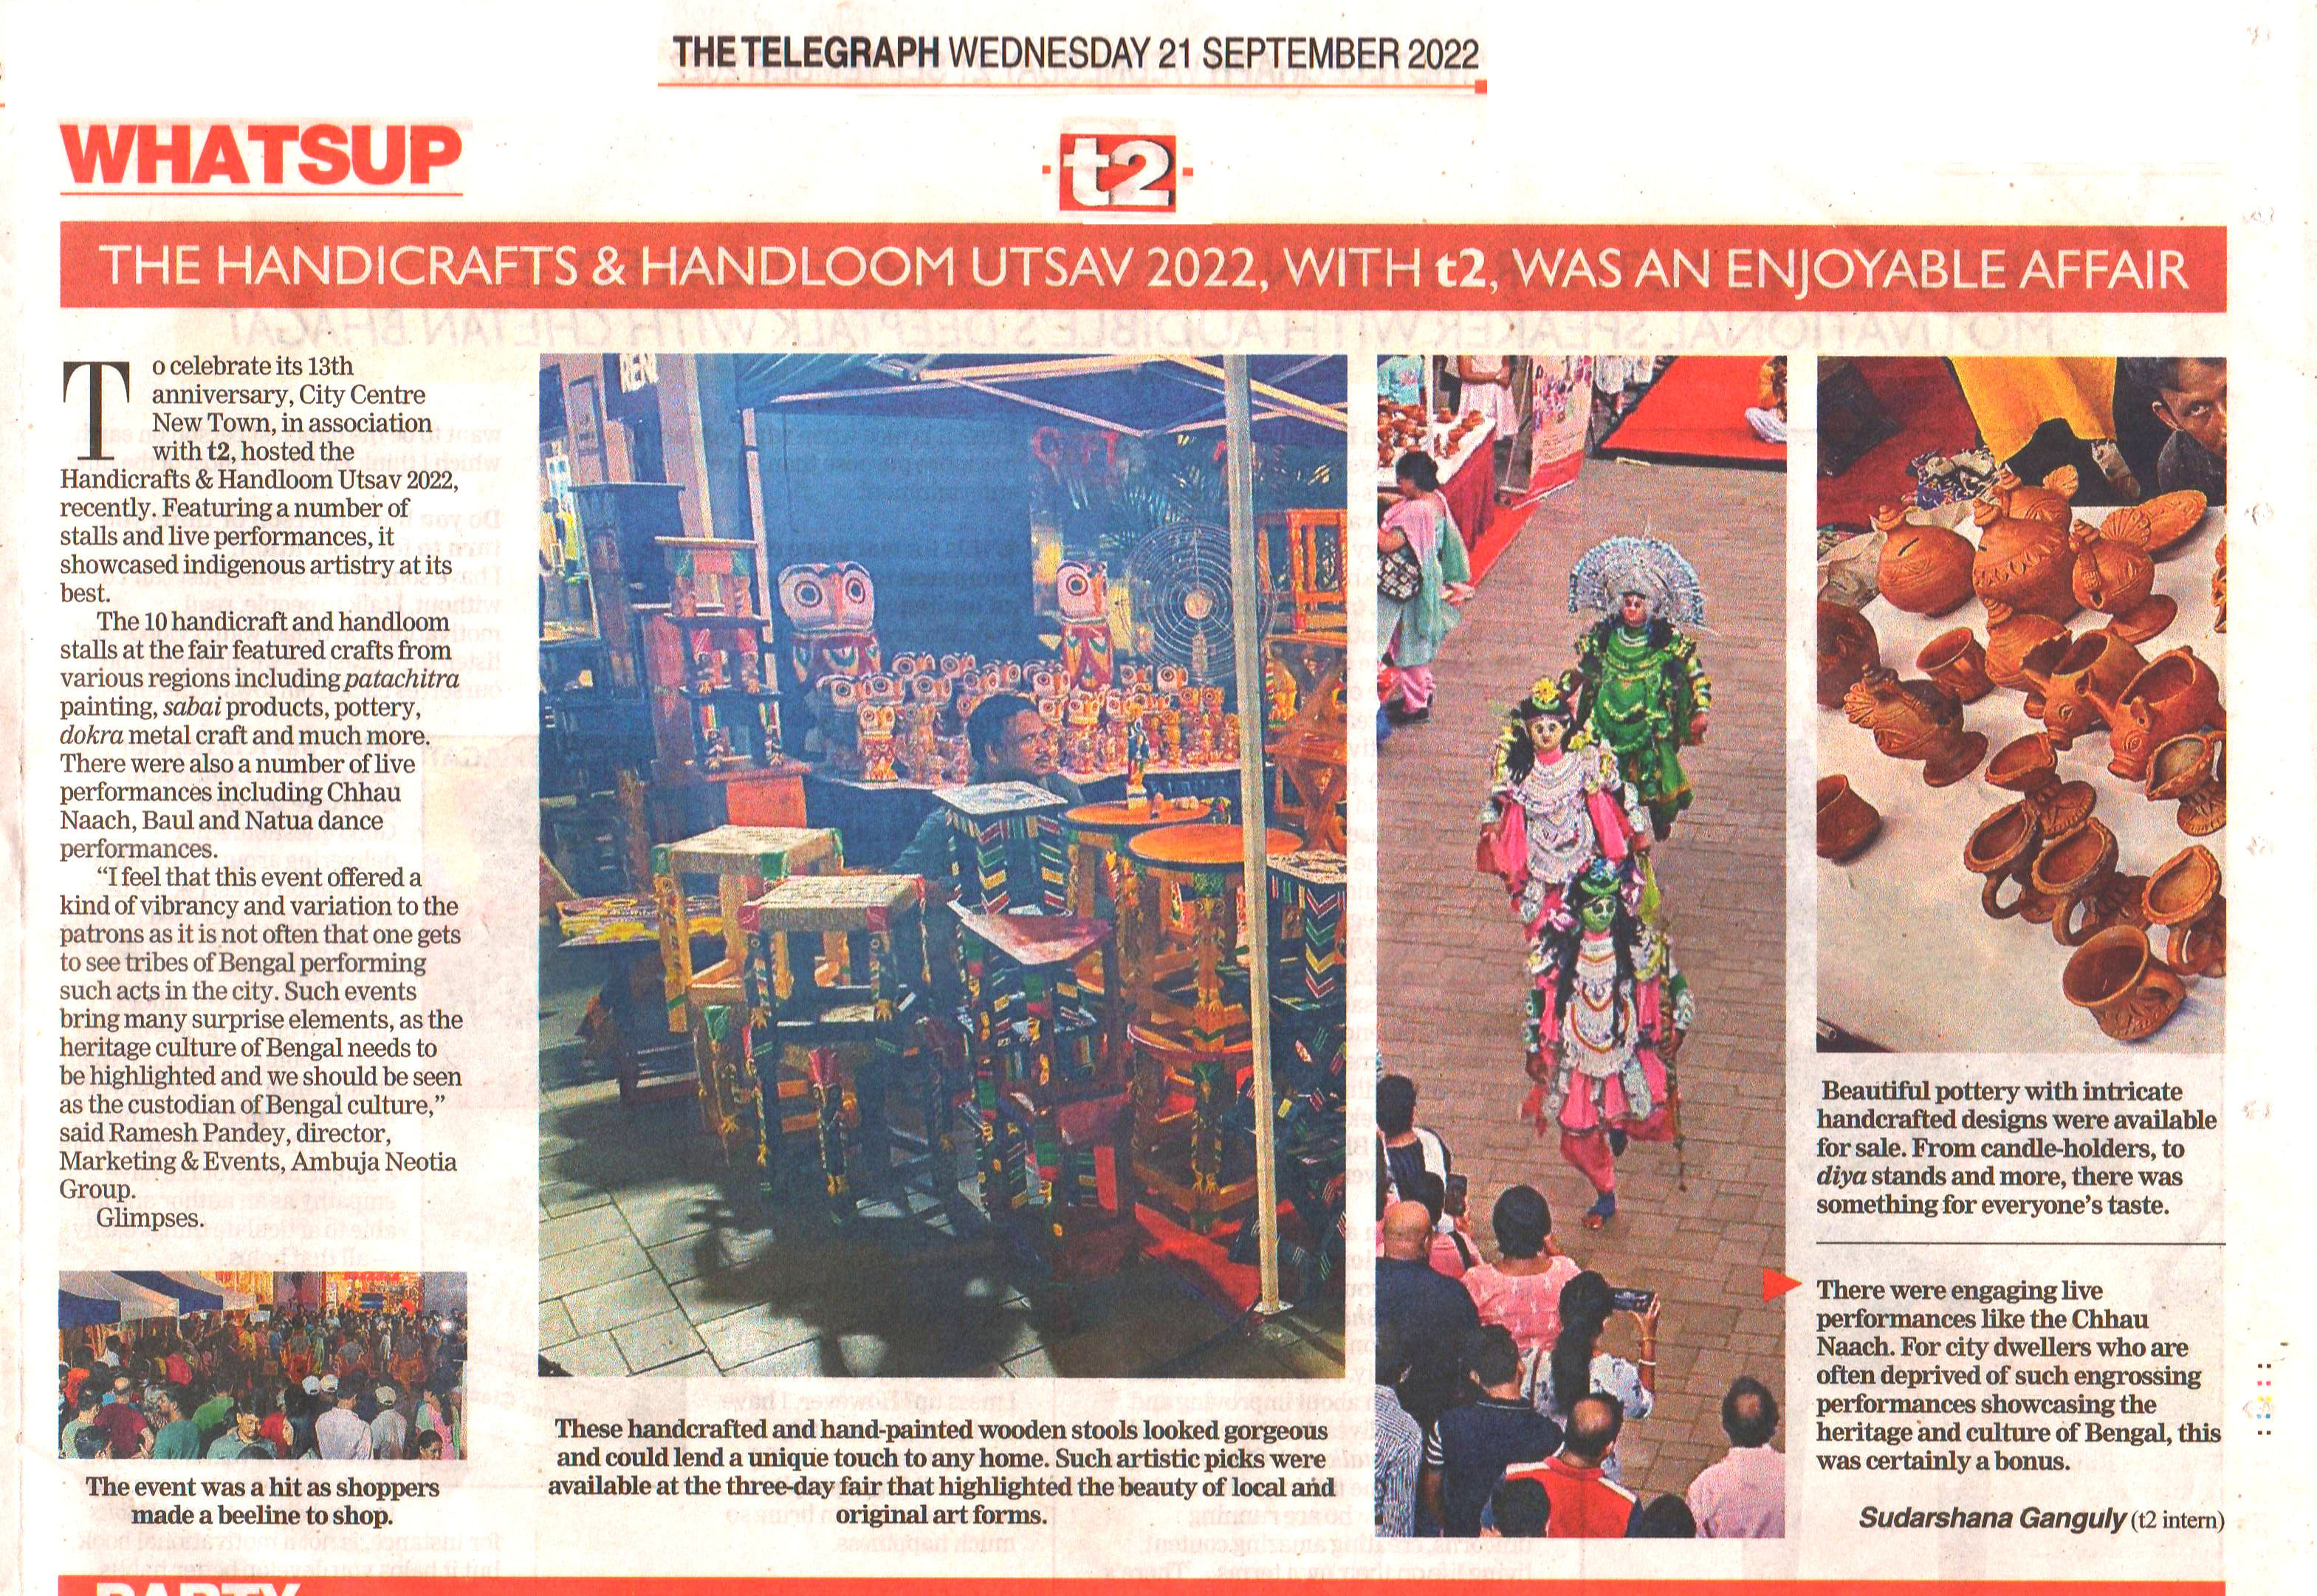 The Handicraft & Handloom Utsav 2022 at City Centre New Town